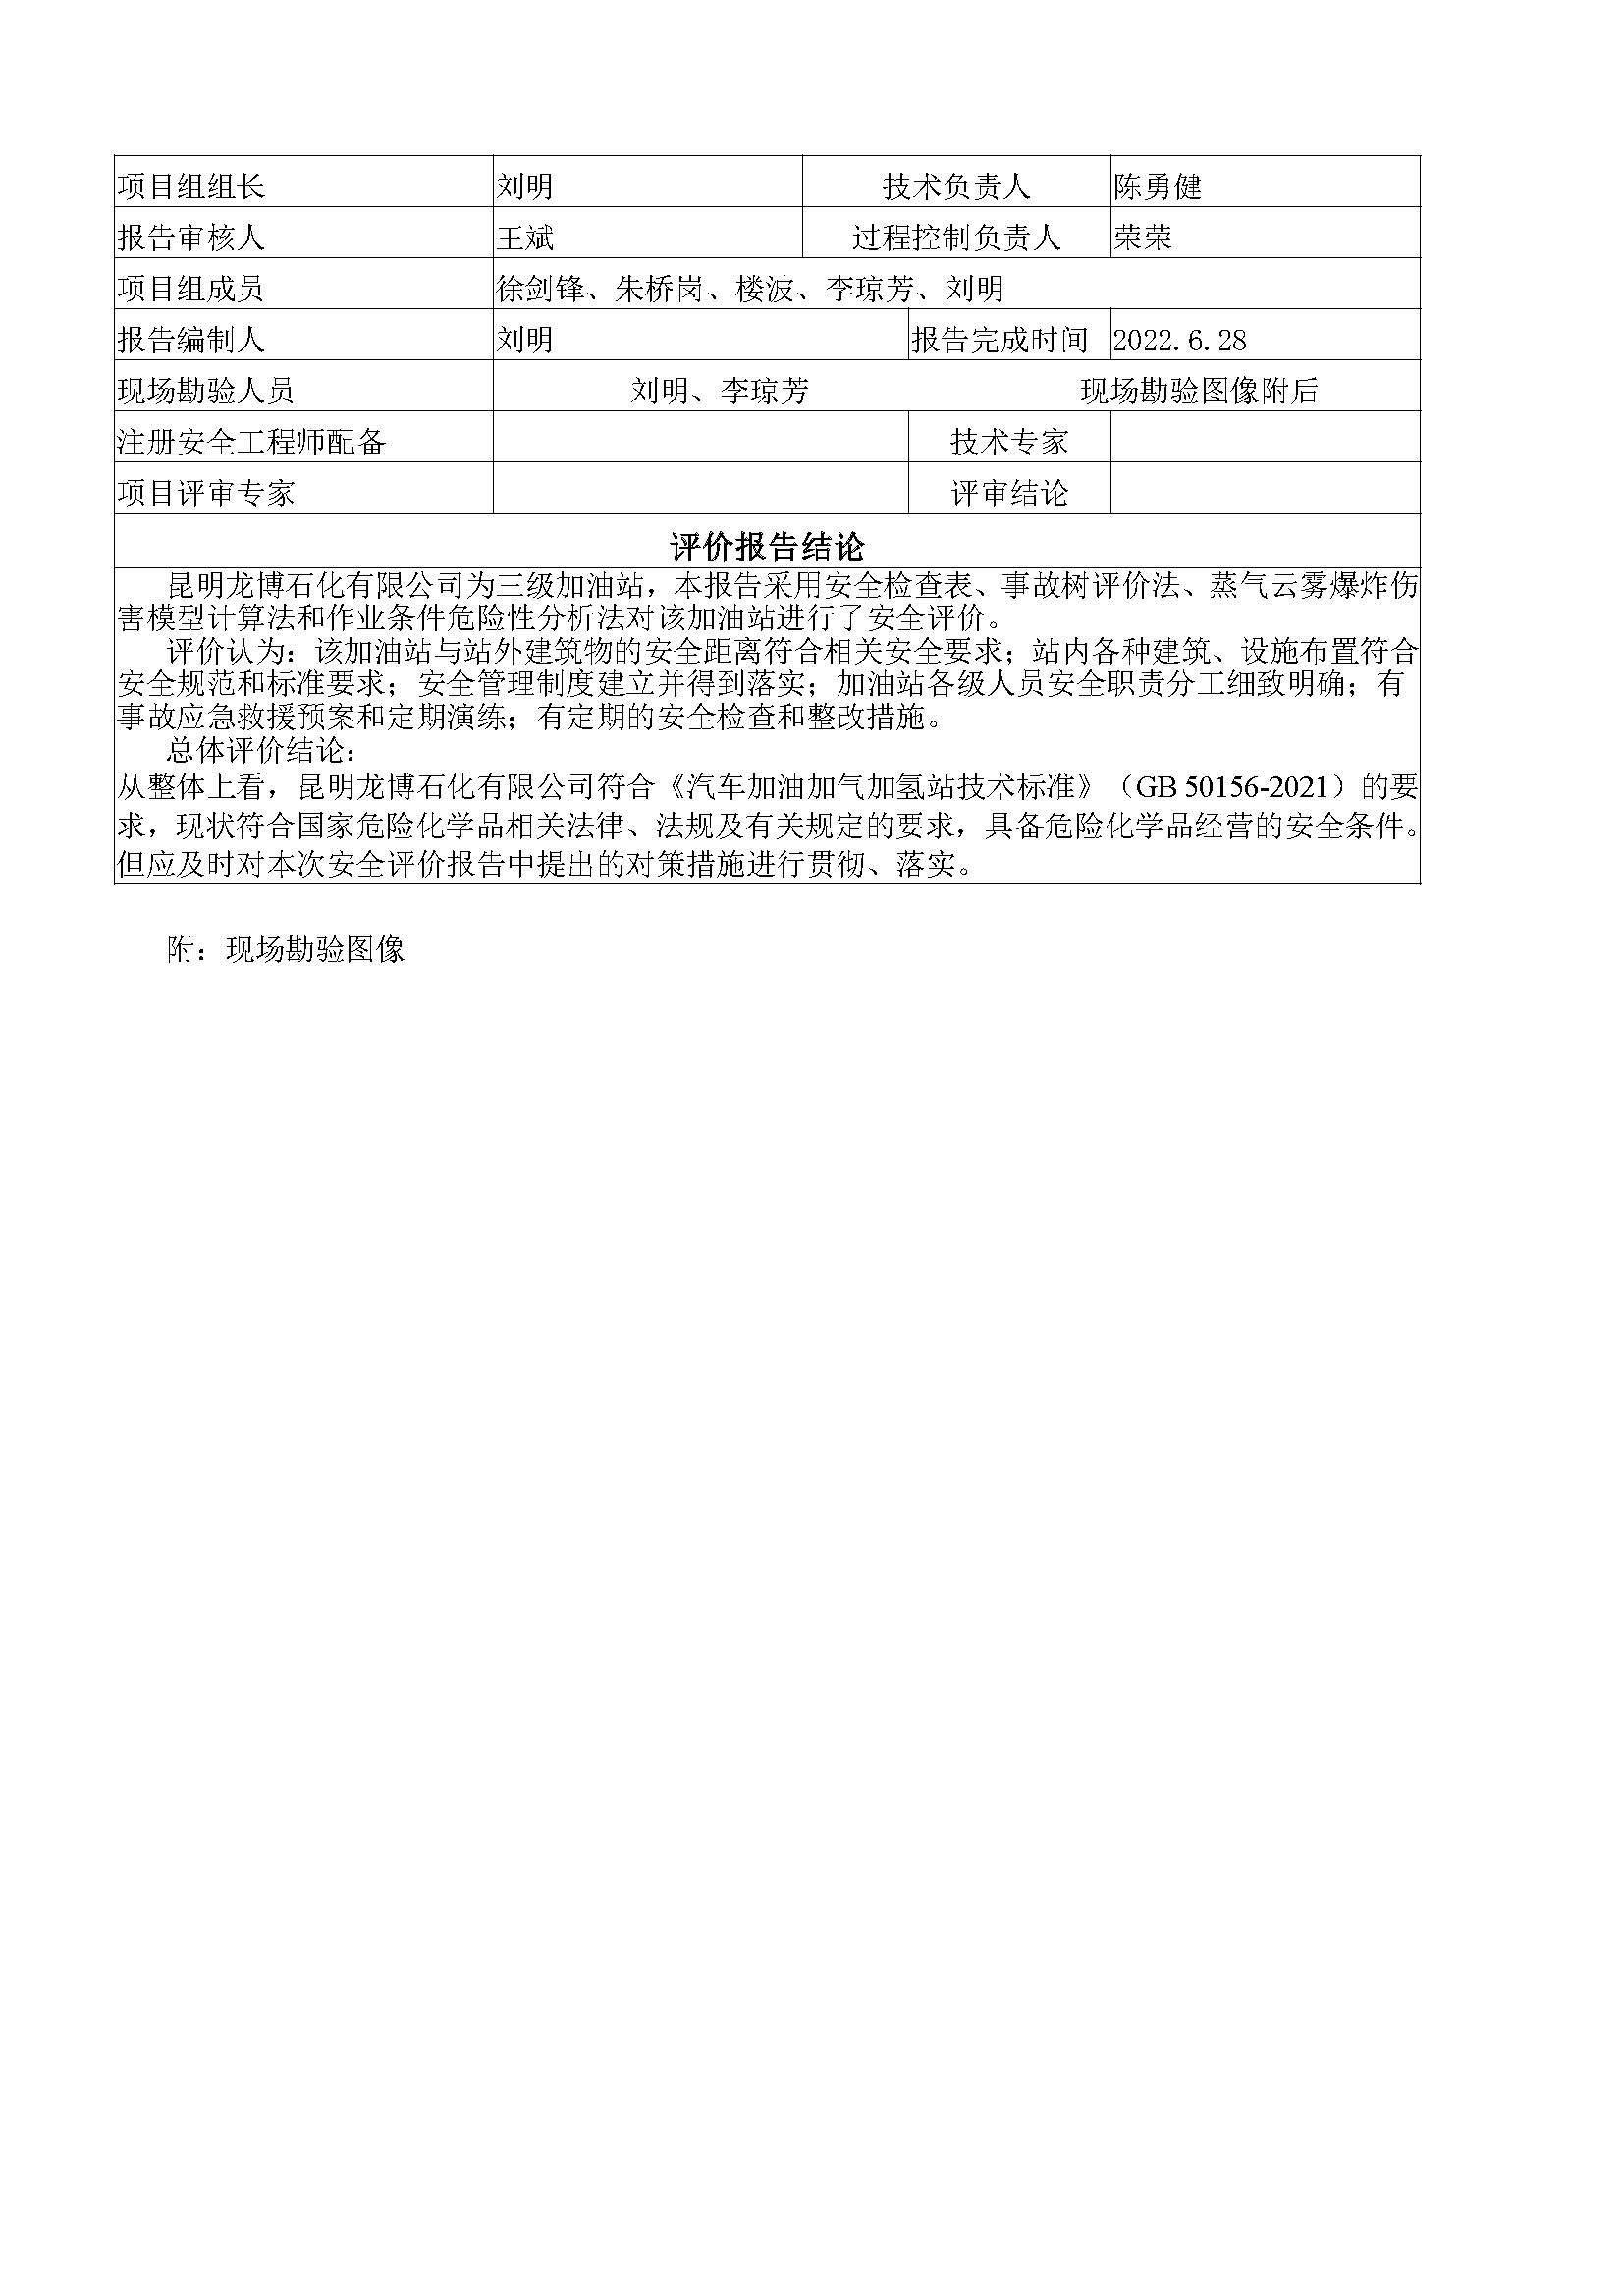 昆明龙博石化有限公司安全现状安全评价报告基本信息公开表